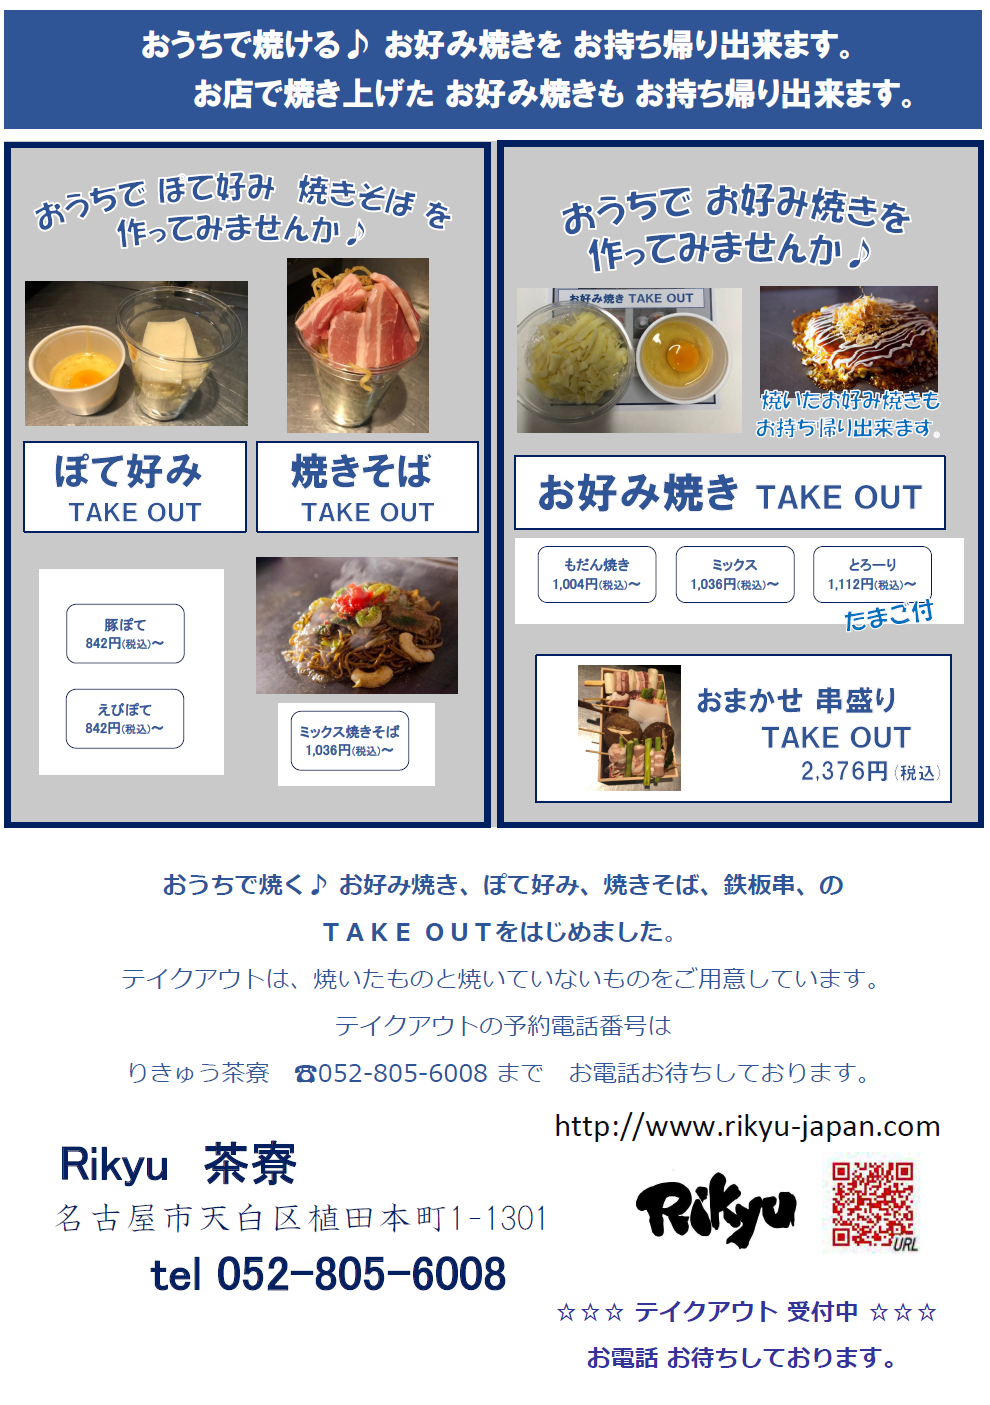 株式会社rikyu 名古屋のお好み焼き もんじゃ焼き 鉄板焼きならりきゅうのお店